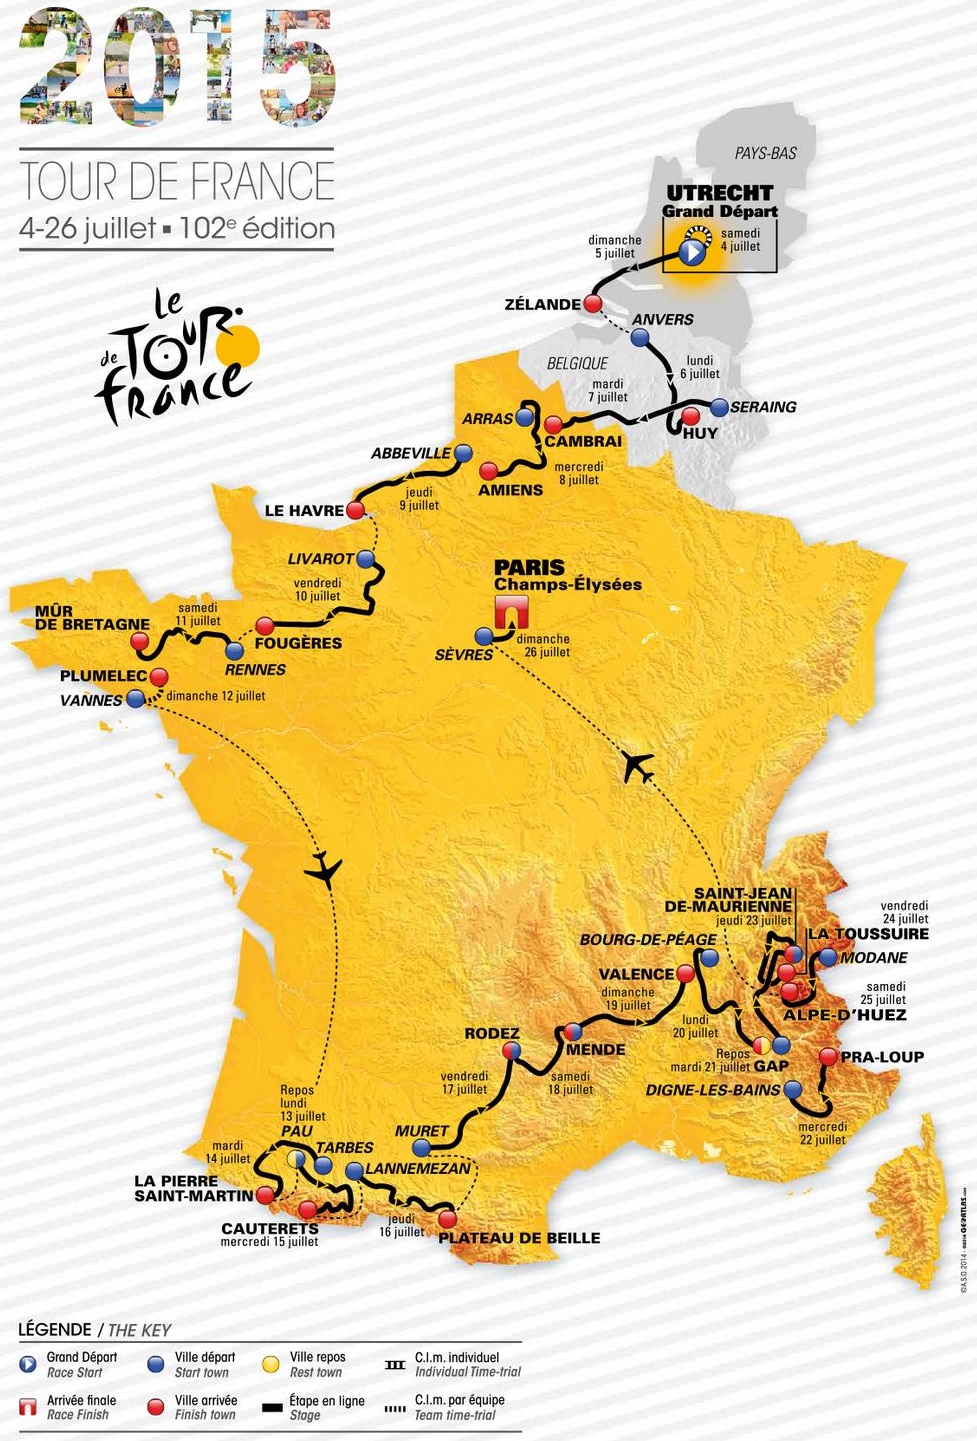 Tour de France 2015 - parcours